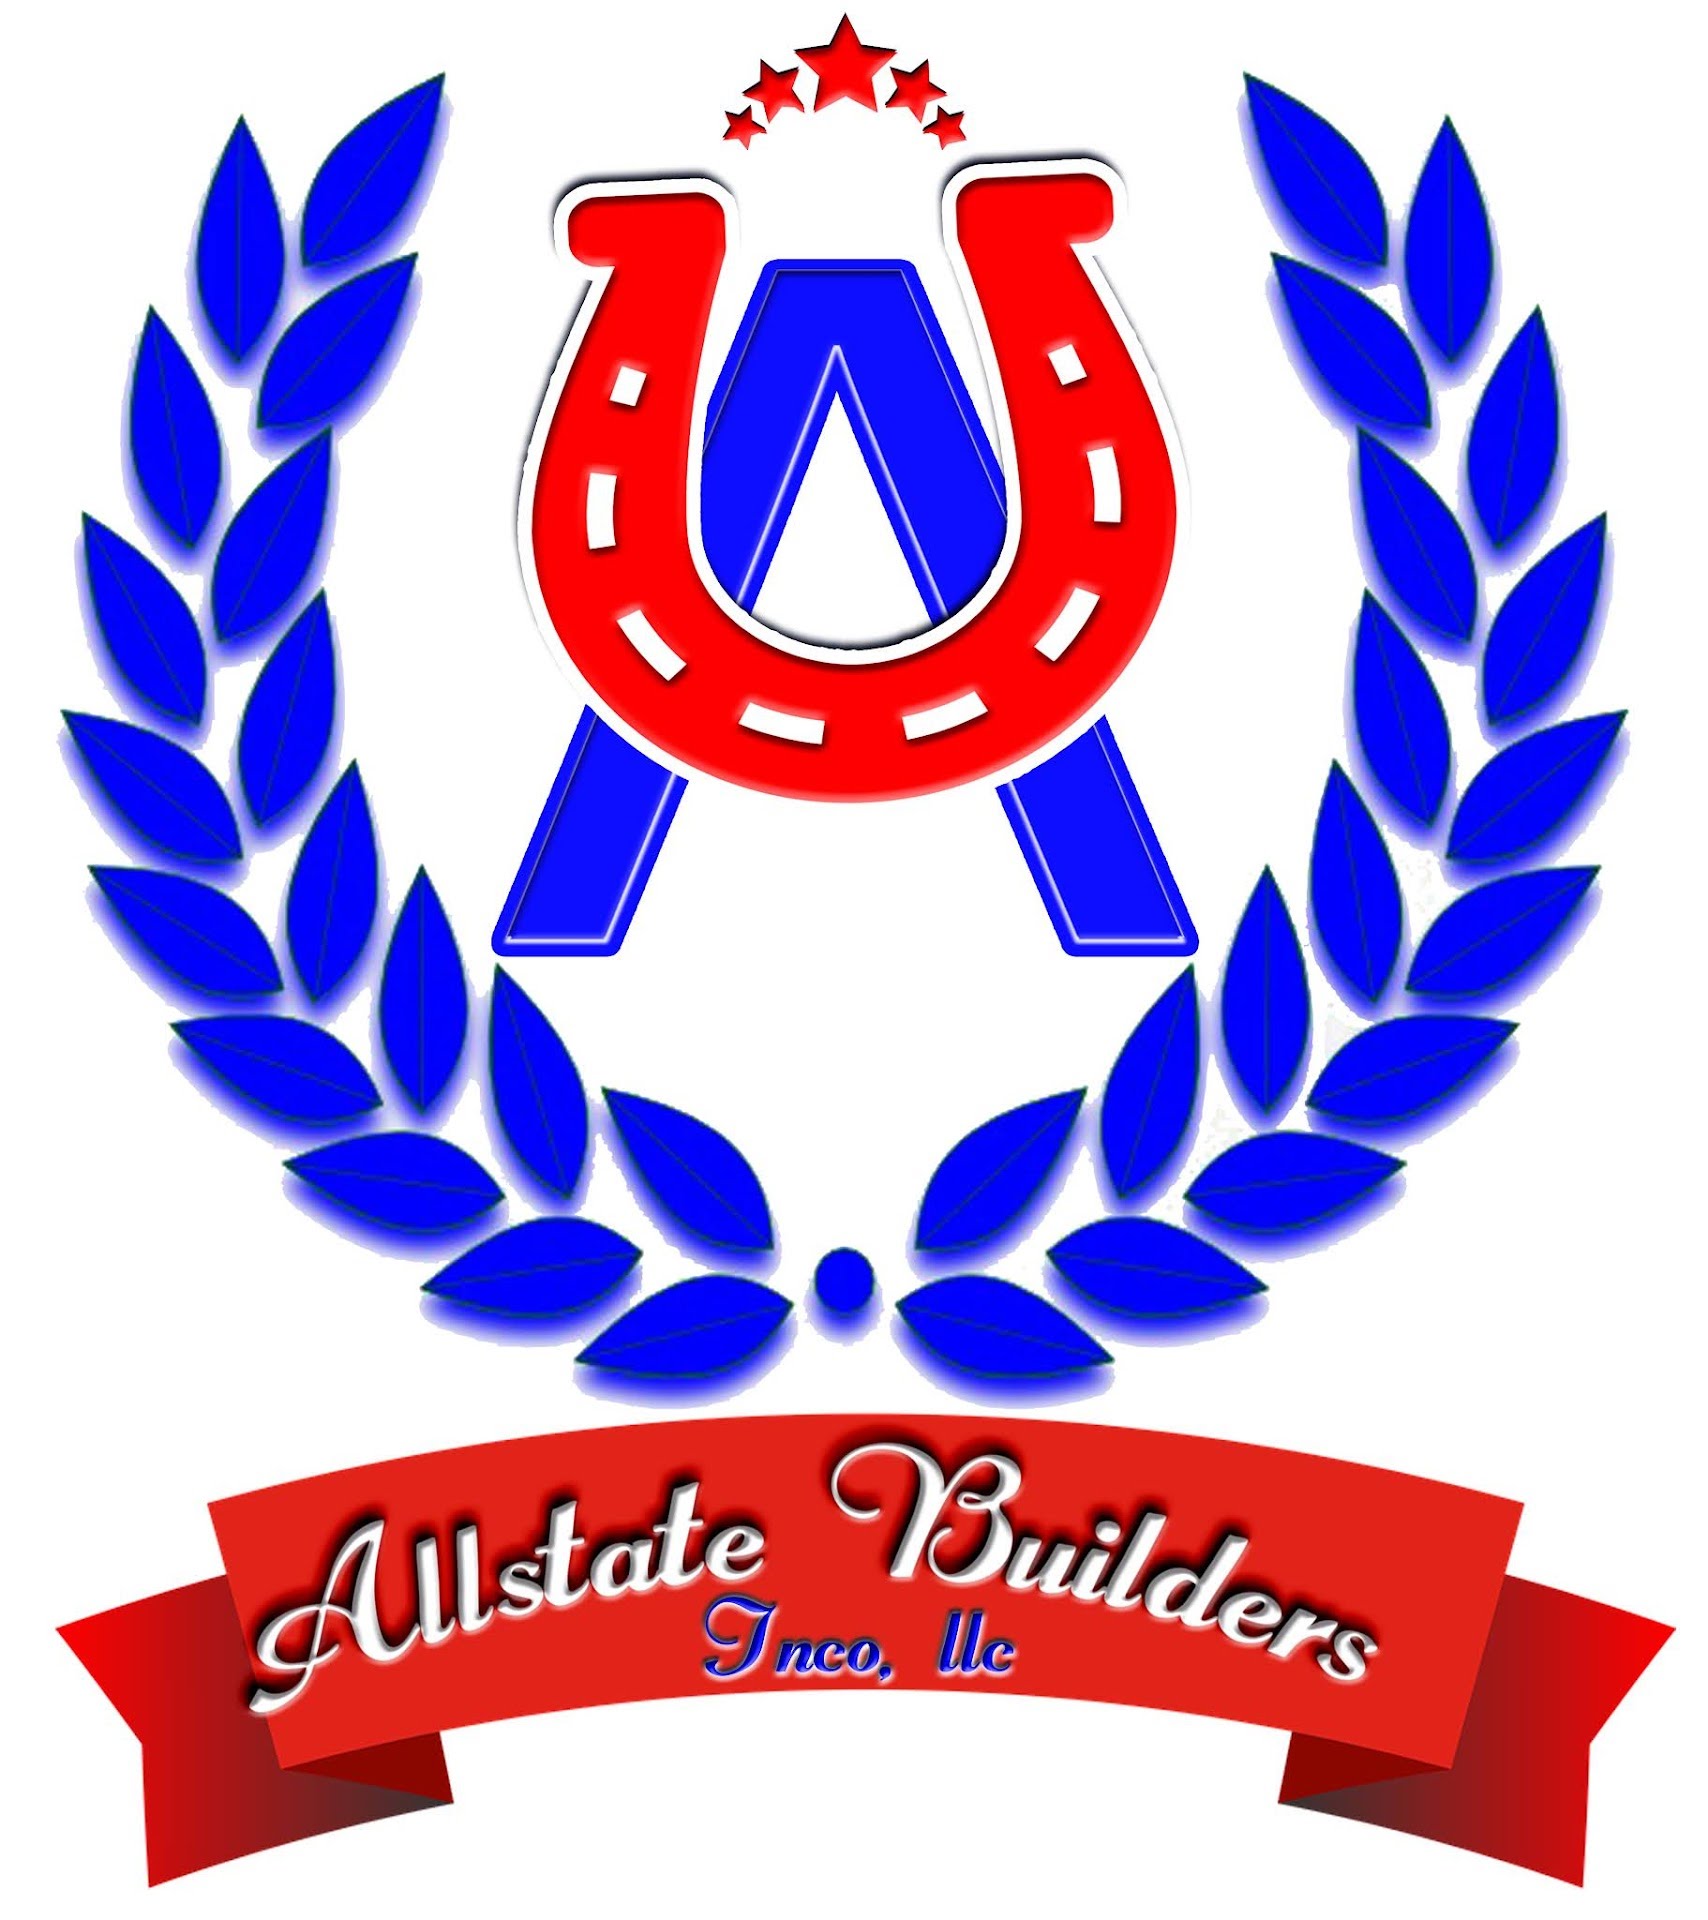 Allstate Builders Inco, LLC Logo